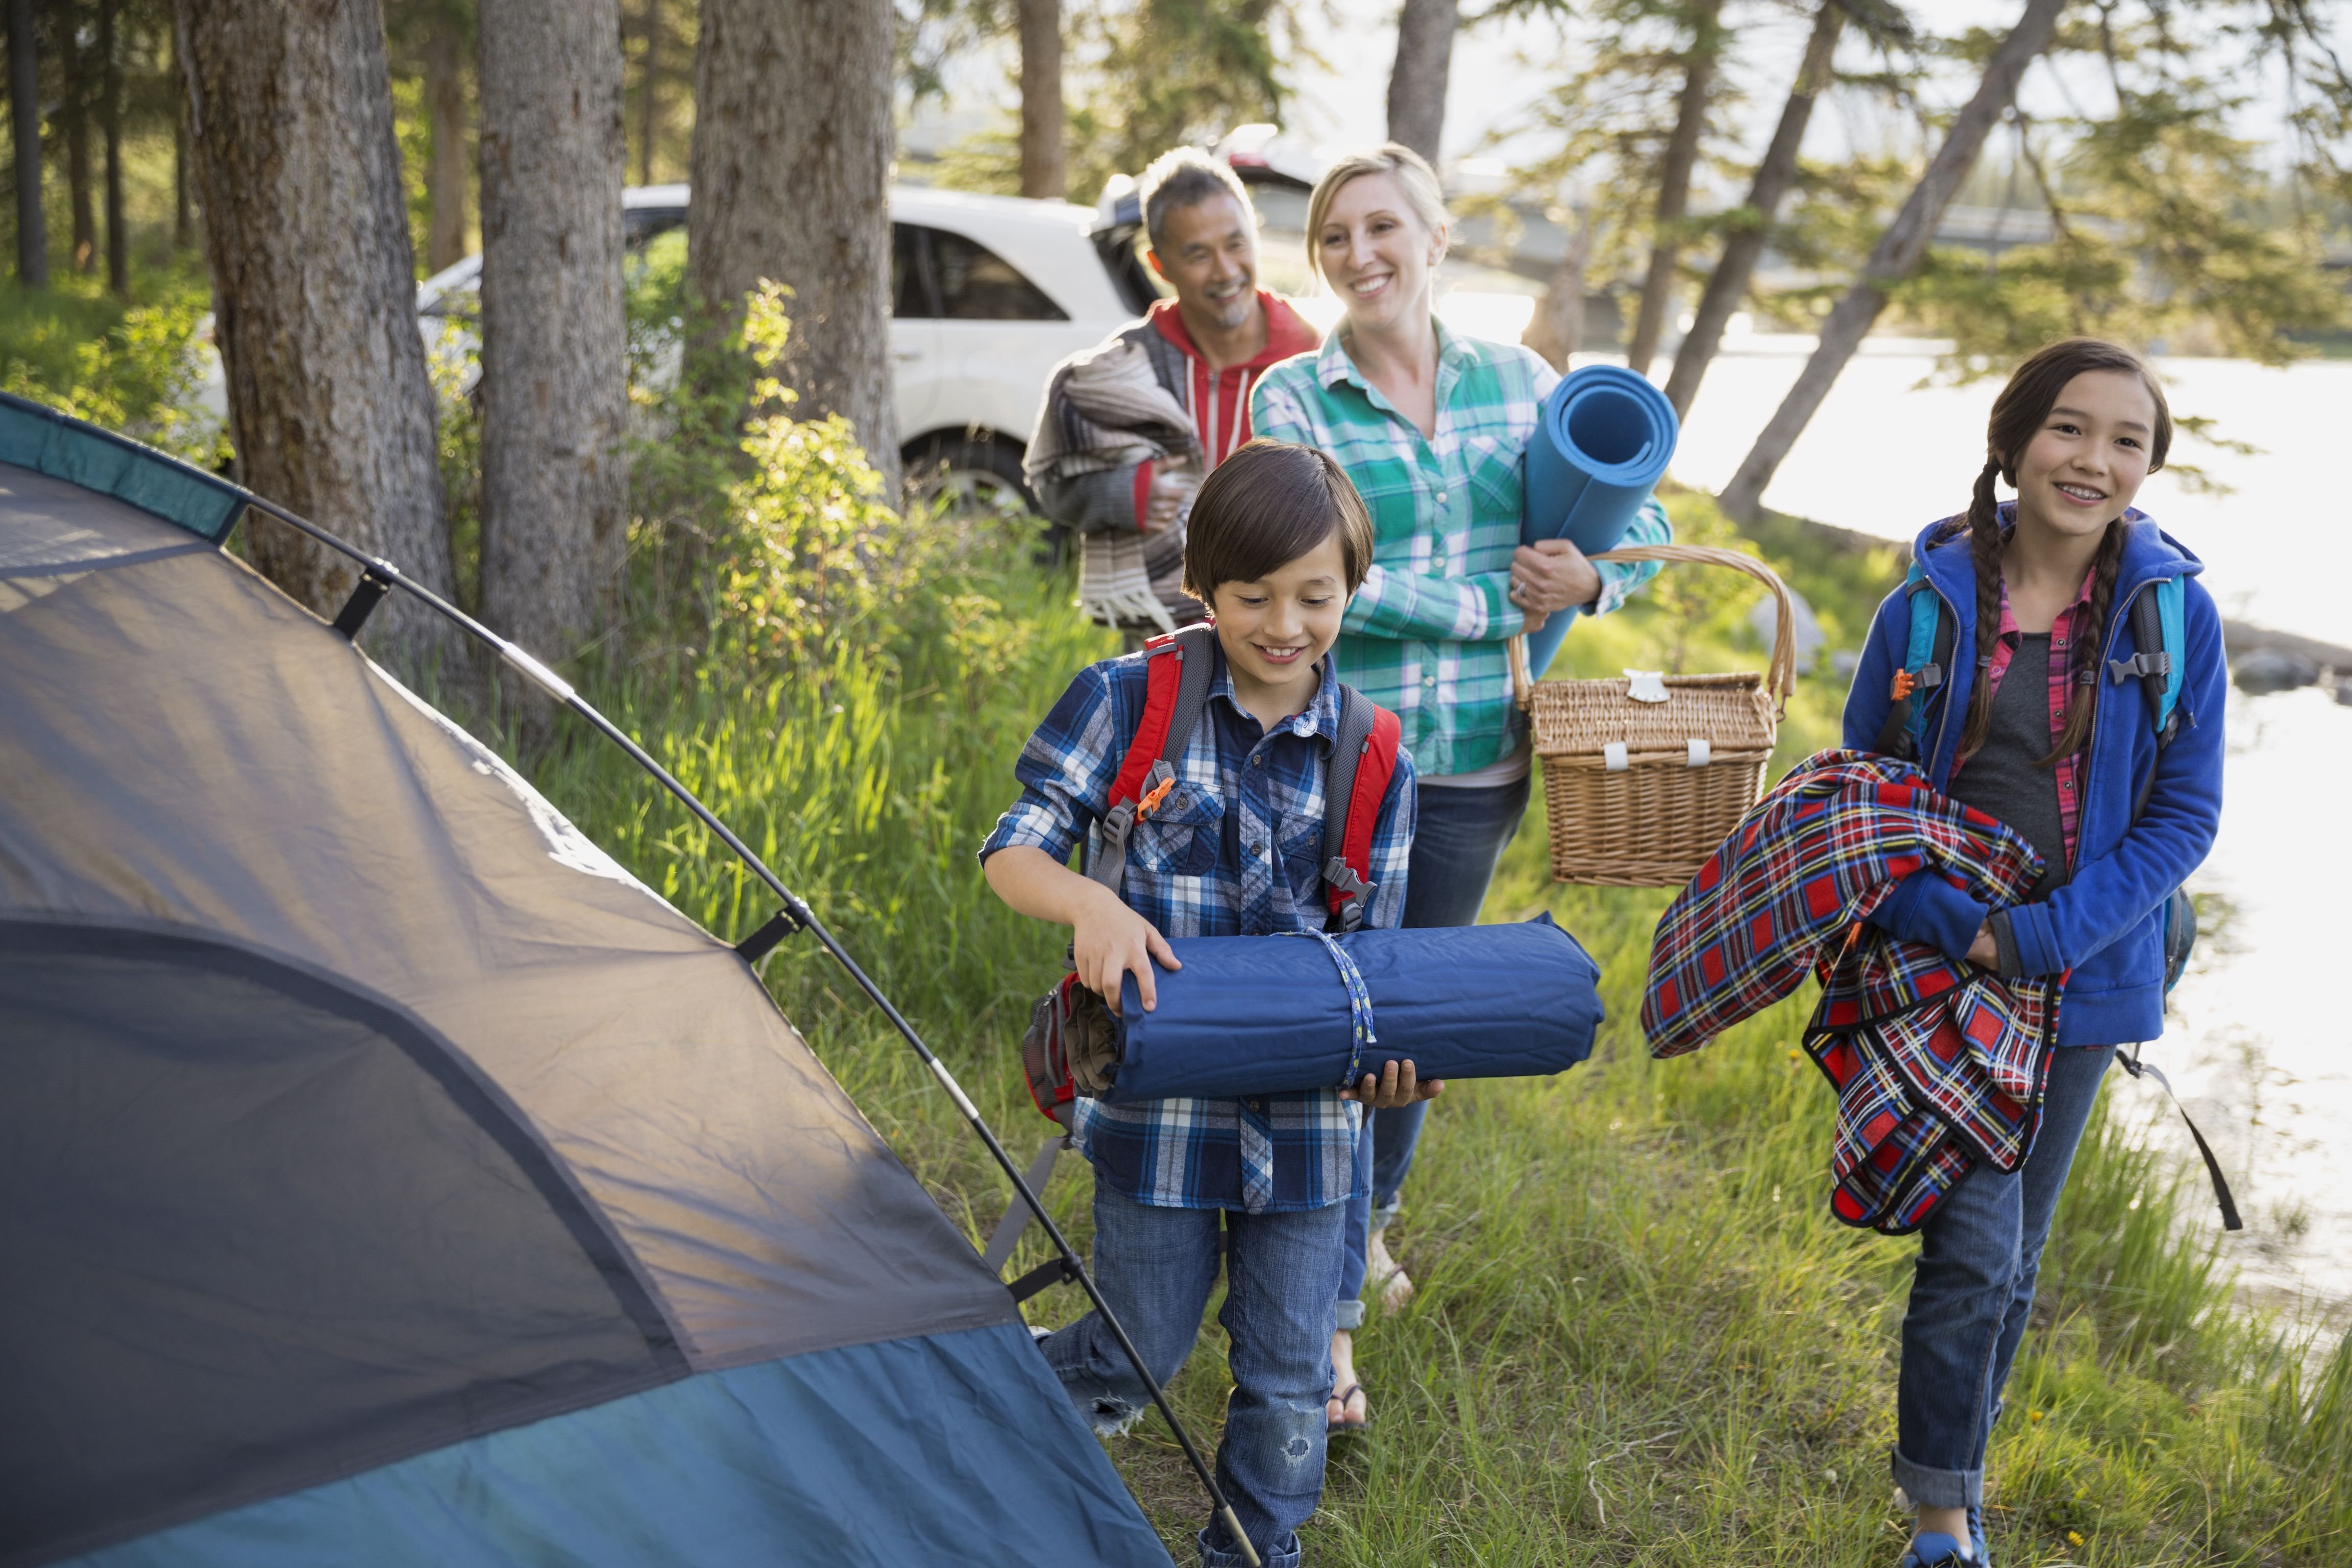 Tourist camp. Туристический поход. Поход с палатками. Семья в походе. Туризм дети.